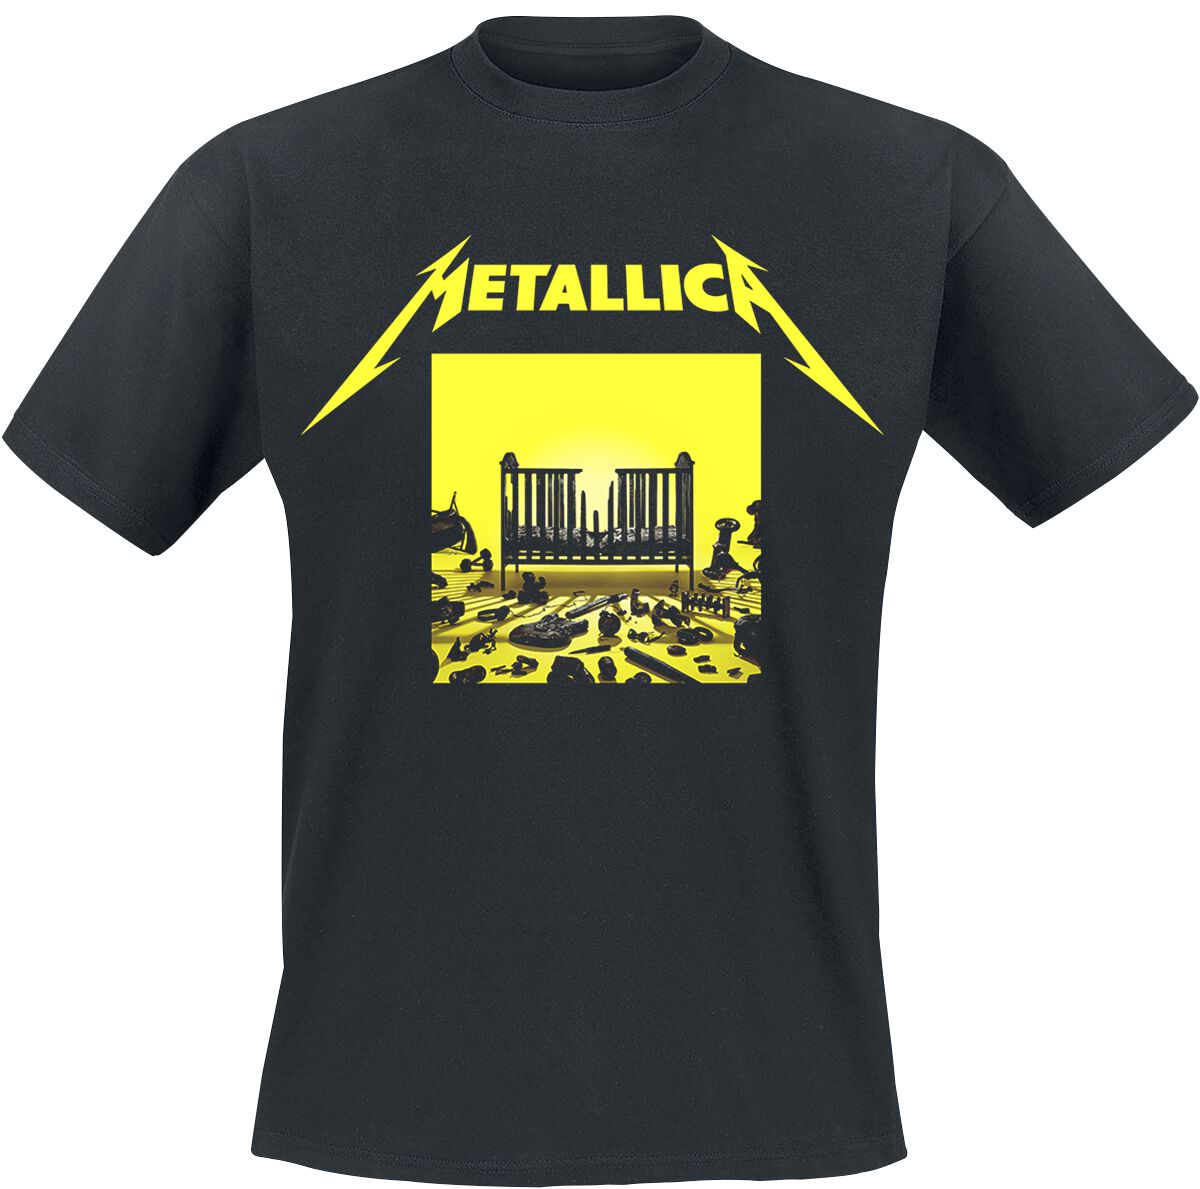 Metallica T-Shirt - M72 Squared Cover - S bis 5XL - für Männer - Größe XL - schwarz  - Lizenziertes Merchandise!